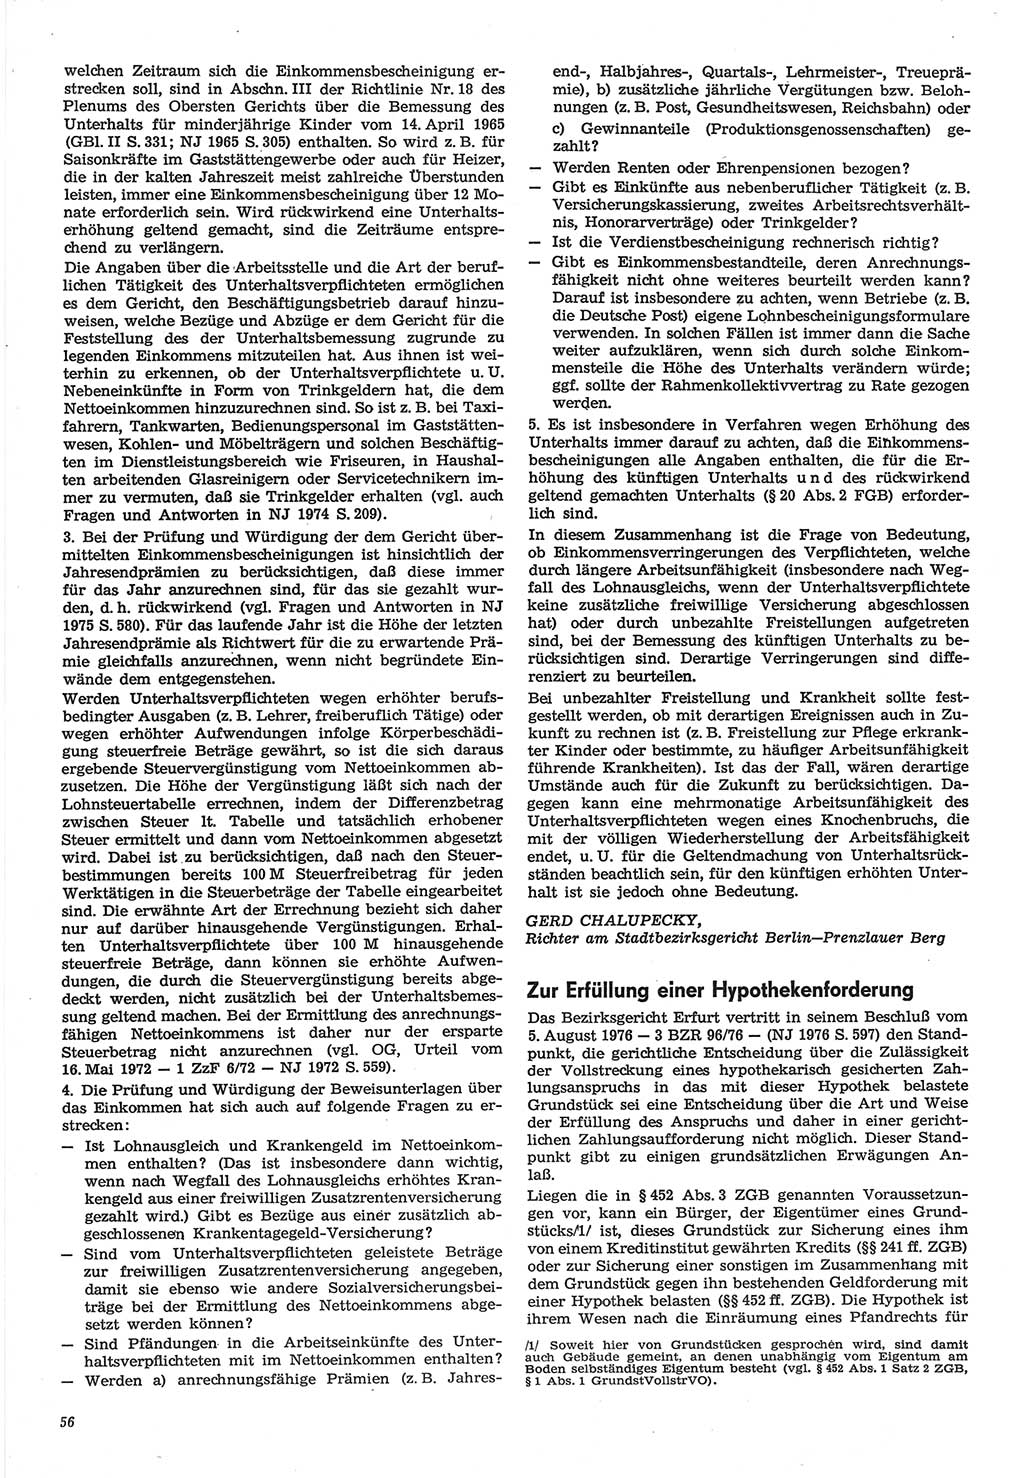 Neue Justiz (NJ), Zeitschrift für Recht und Rechtswissenschaft-Zeitschrift, sozialistisches Recht und Gesetzlichkeit, 31. Jahrgang 1977, Seite 56 (NJ DDR 1977, S. 56)